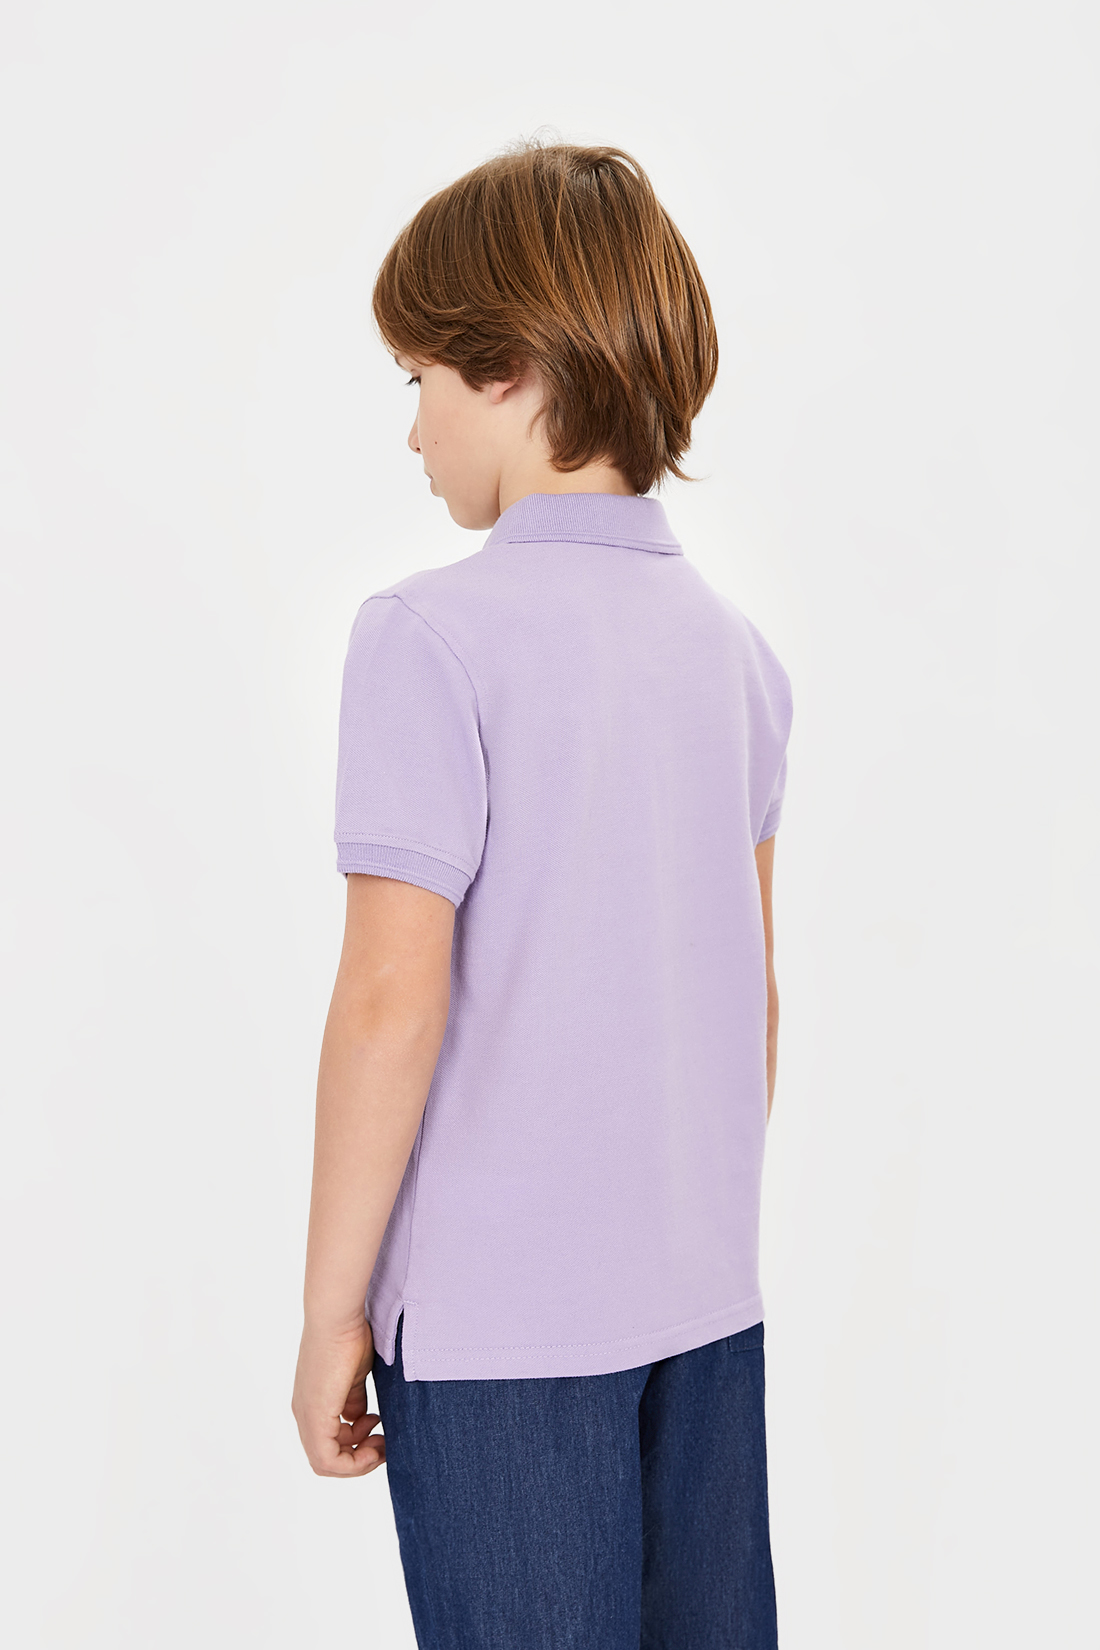 Поло для мальчика (арт. baon BK701001), размер 128, цвет фиолетовый Поло для мальчика (арт. baon BK701001) - фото 2